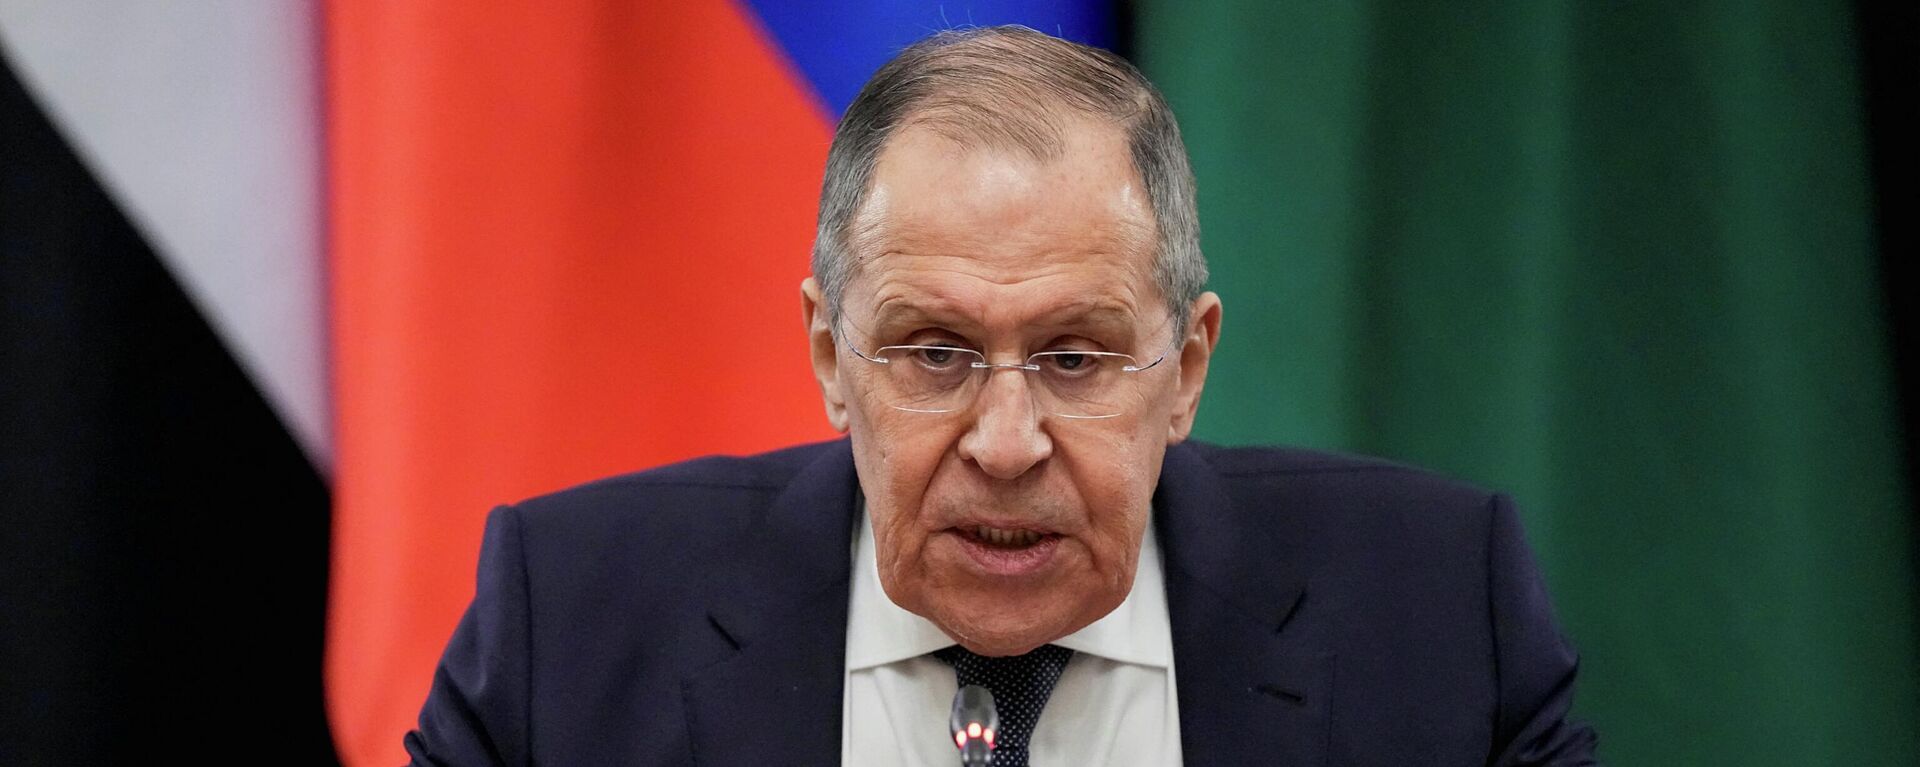 O ministro das Relações Exteriores da Rússia, Sergei Lavrov, fala durante suas conversas com representantes das nações da Liga Árabe, em Moscou, Rússia, em 4 de abril de 2022 - Sputnik Brasil, 1920, 04.04.2022